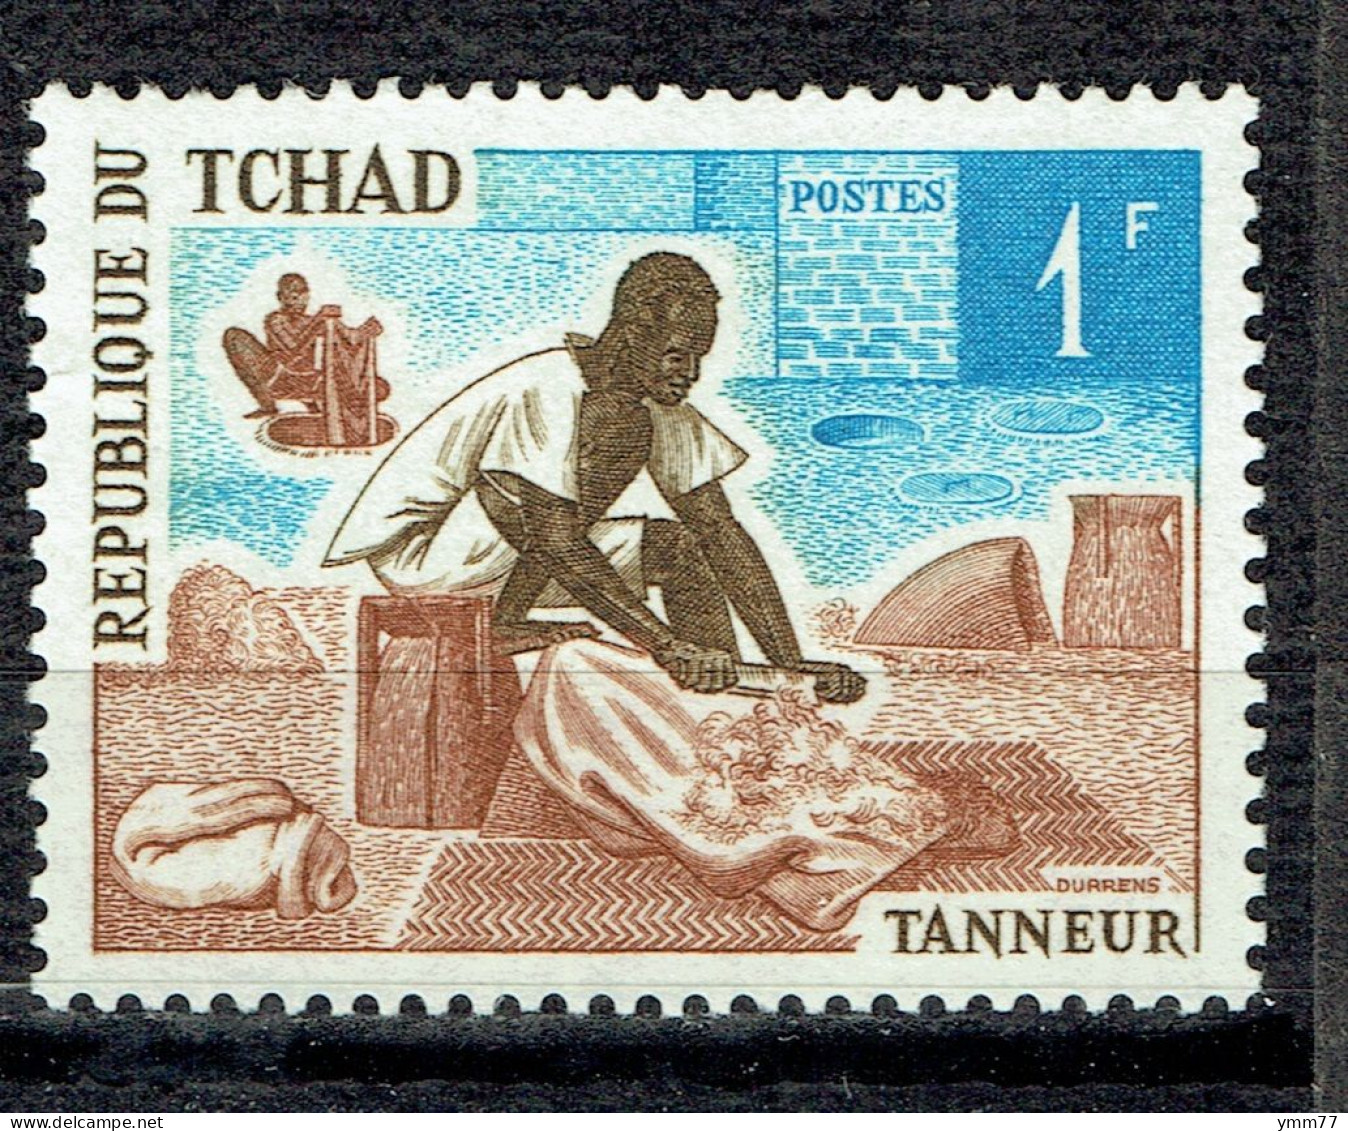 Métier Et Artisanat : Tanneur - Chad (1960-...)